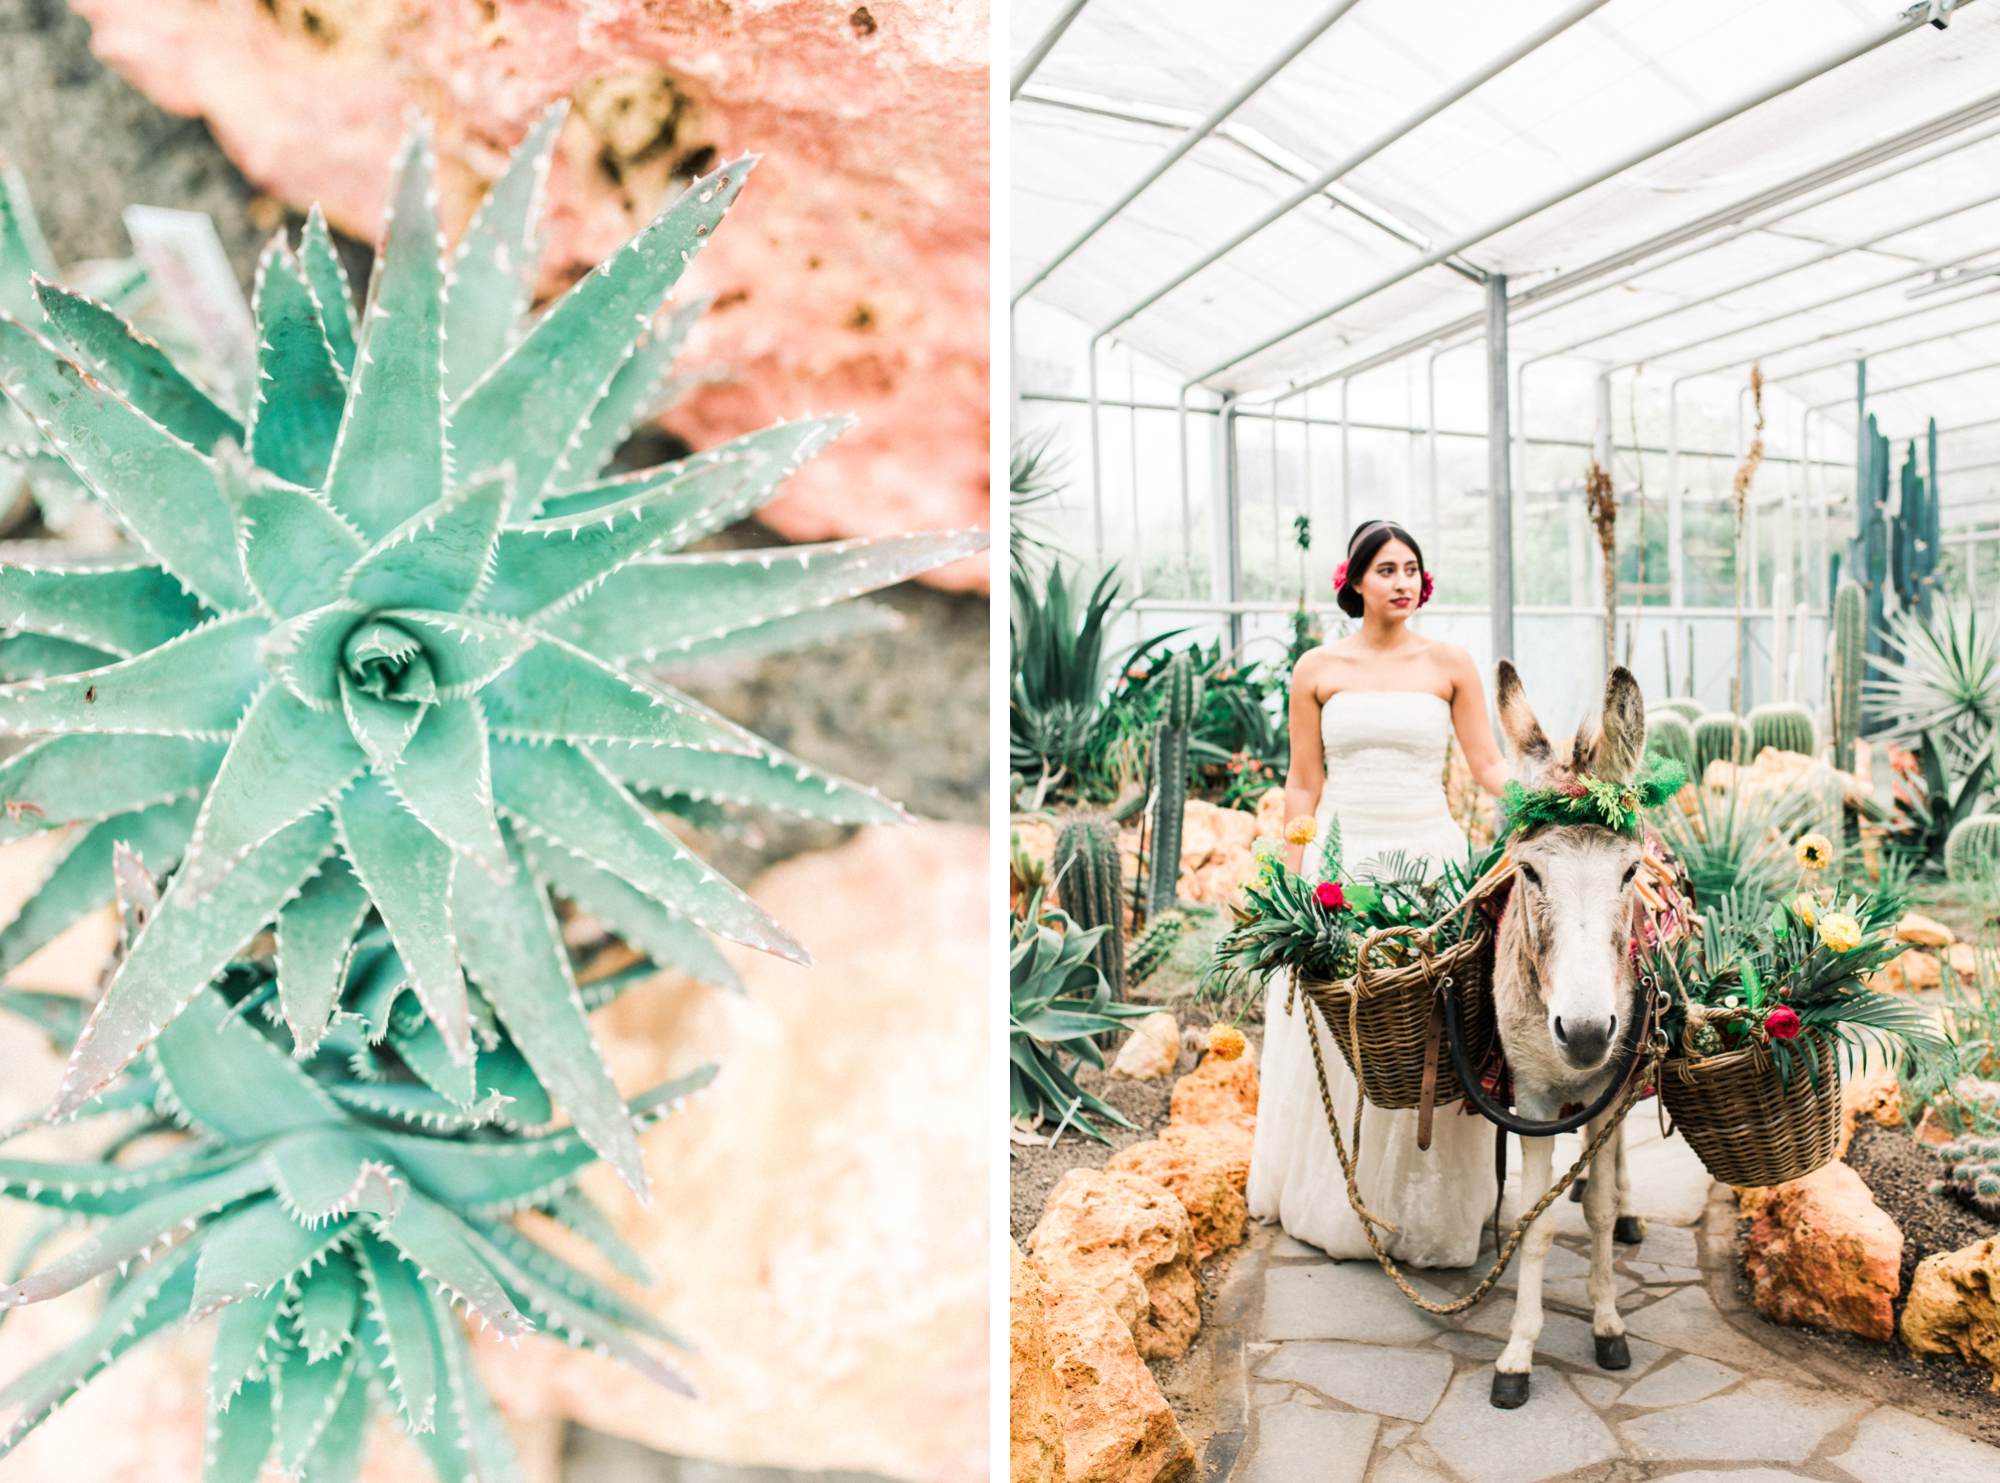 Fine art wedding photographer the Netherlands - Mexico - Wedding donkey